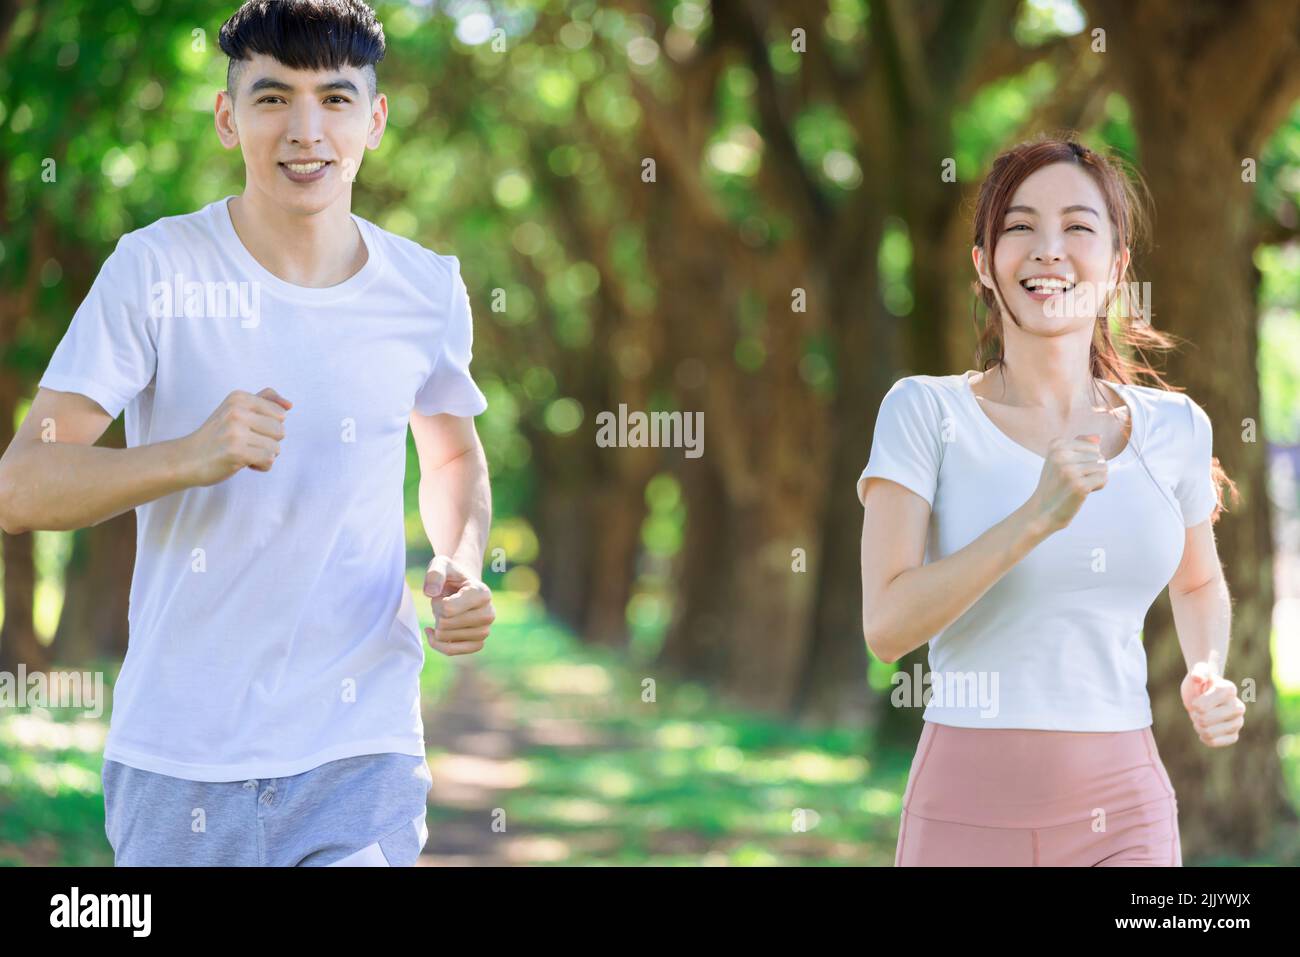 joven pareja corriendo juntos en el parque en un día soleado Foto de stock